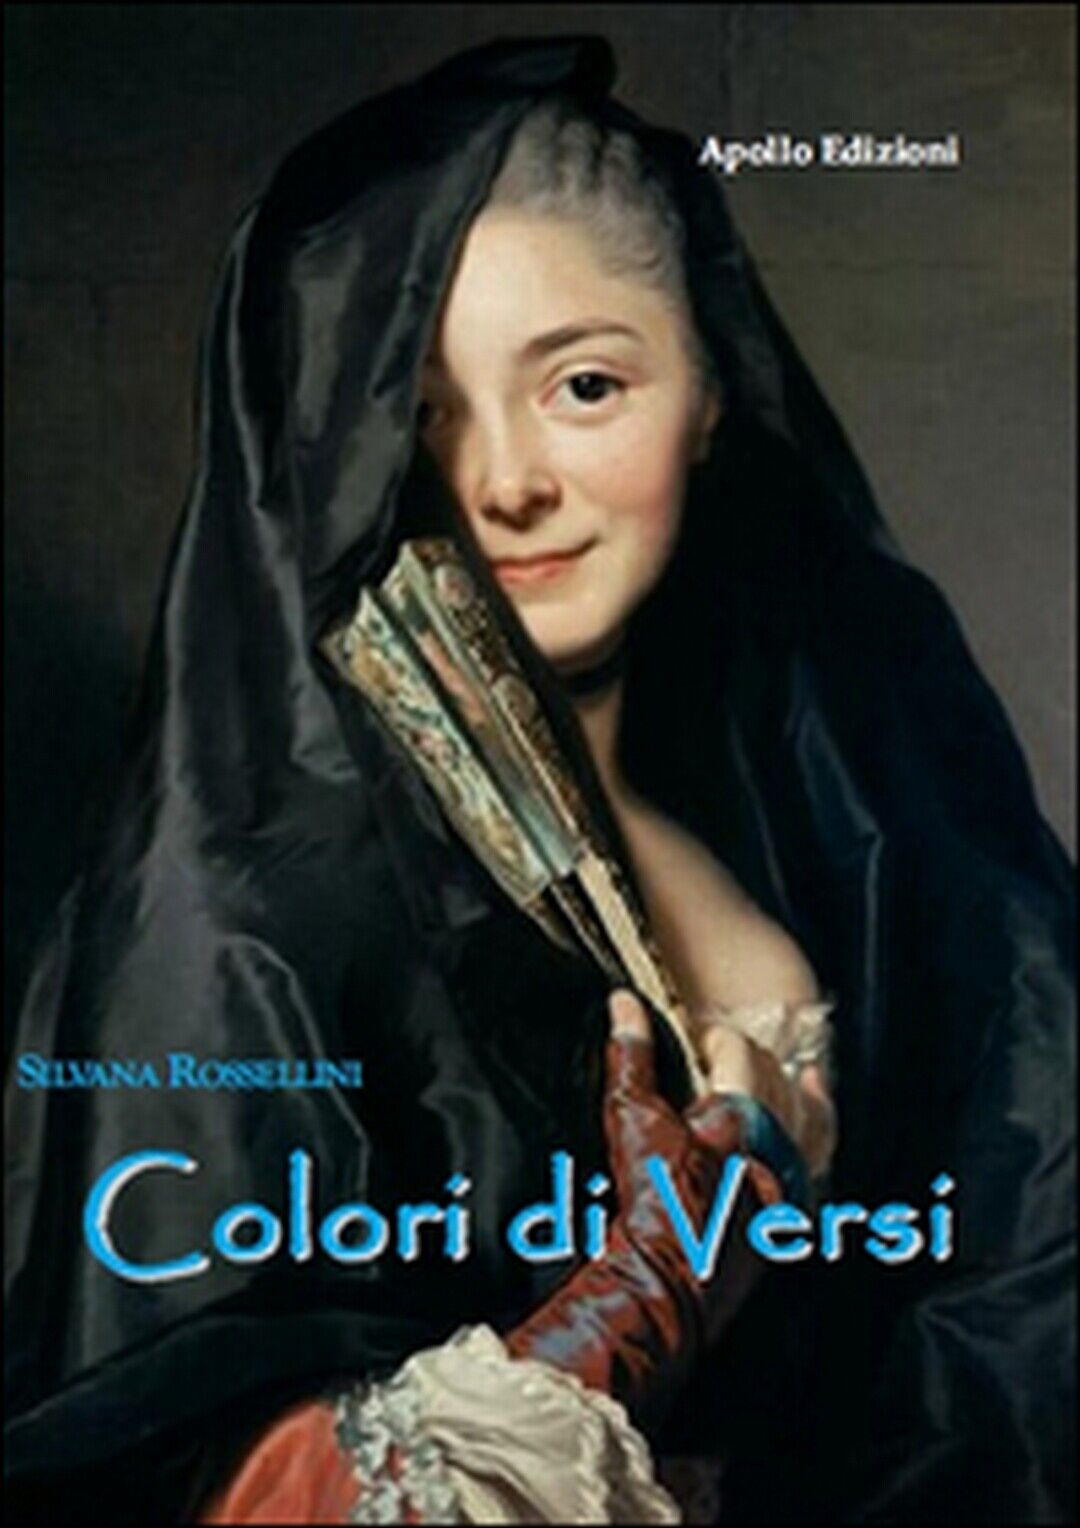 Colori di versi  di Silvana Rossellini,  2017,  Apollo Edizioni